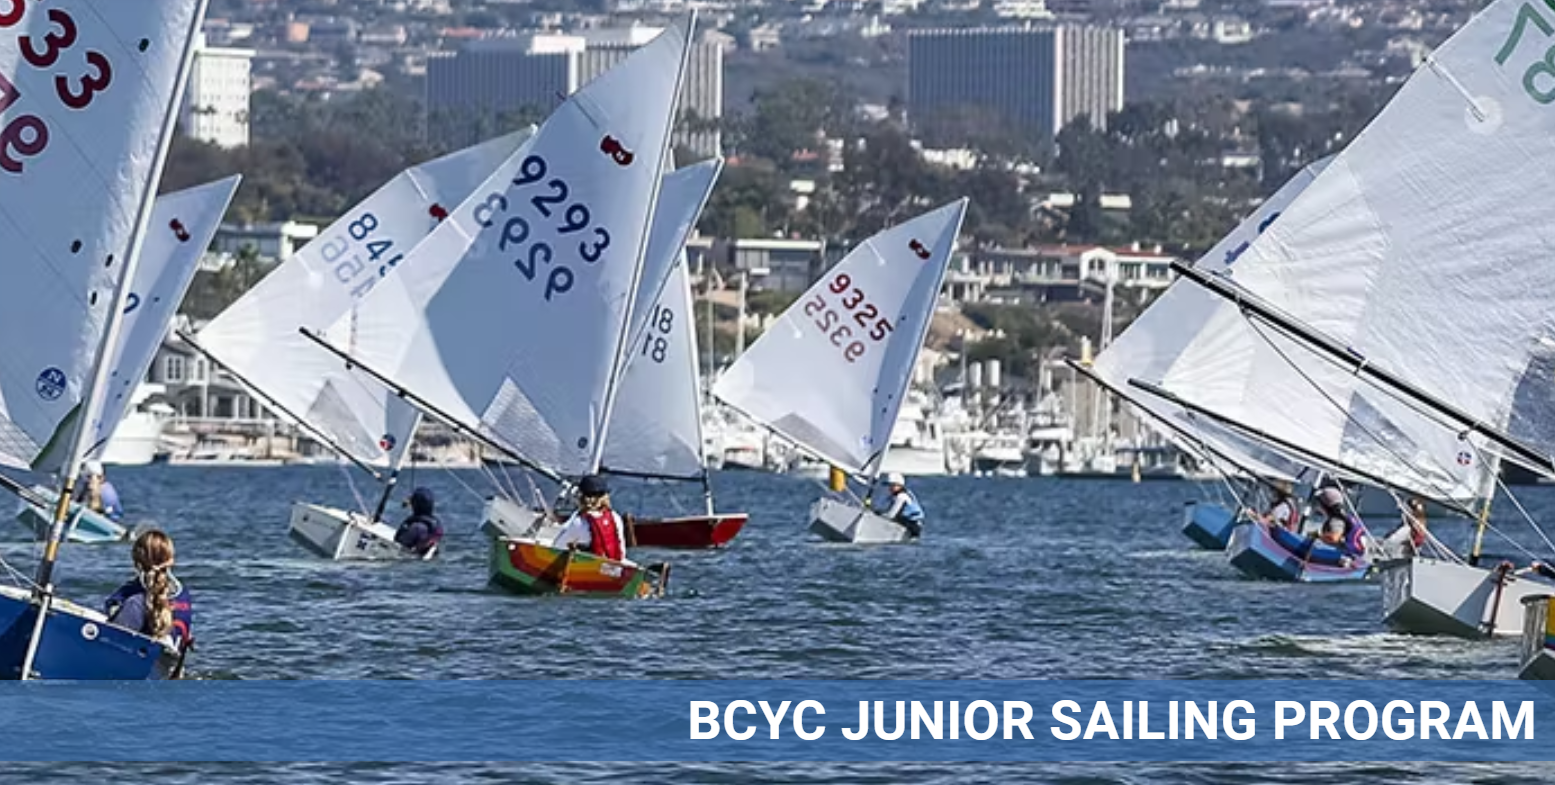 Airwaves News: BCYC Junior Sailing Director & Head Coach of Mater Dei High School Sailing Team